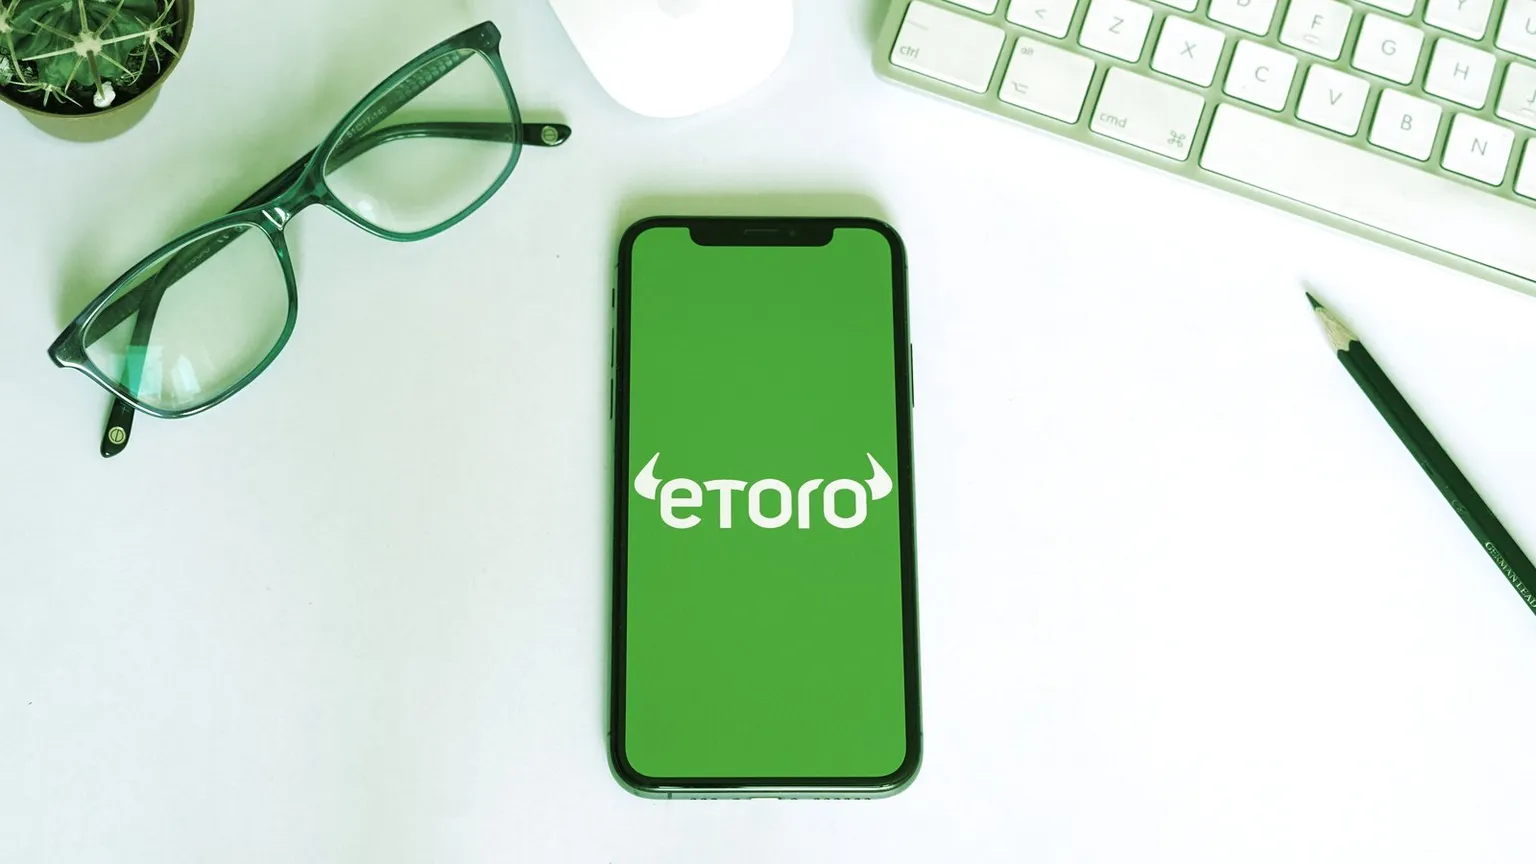 eToro es una plataforma de negociación que permite a los inversores comprar acciones y criptomonedas. Imagen: Shutterstock